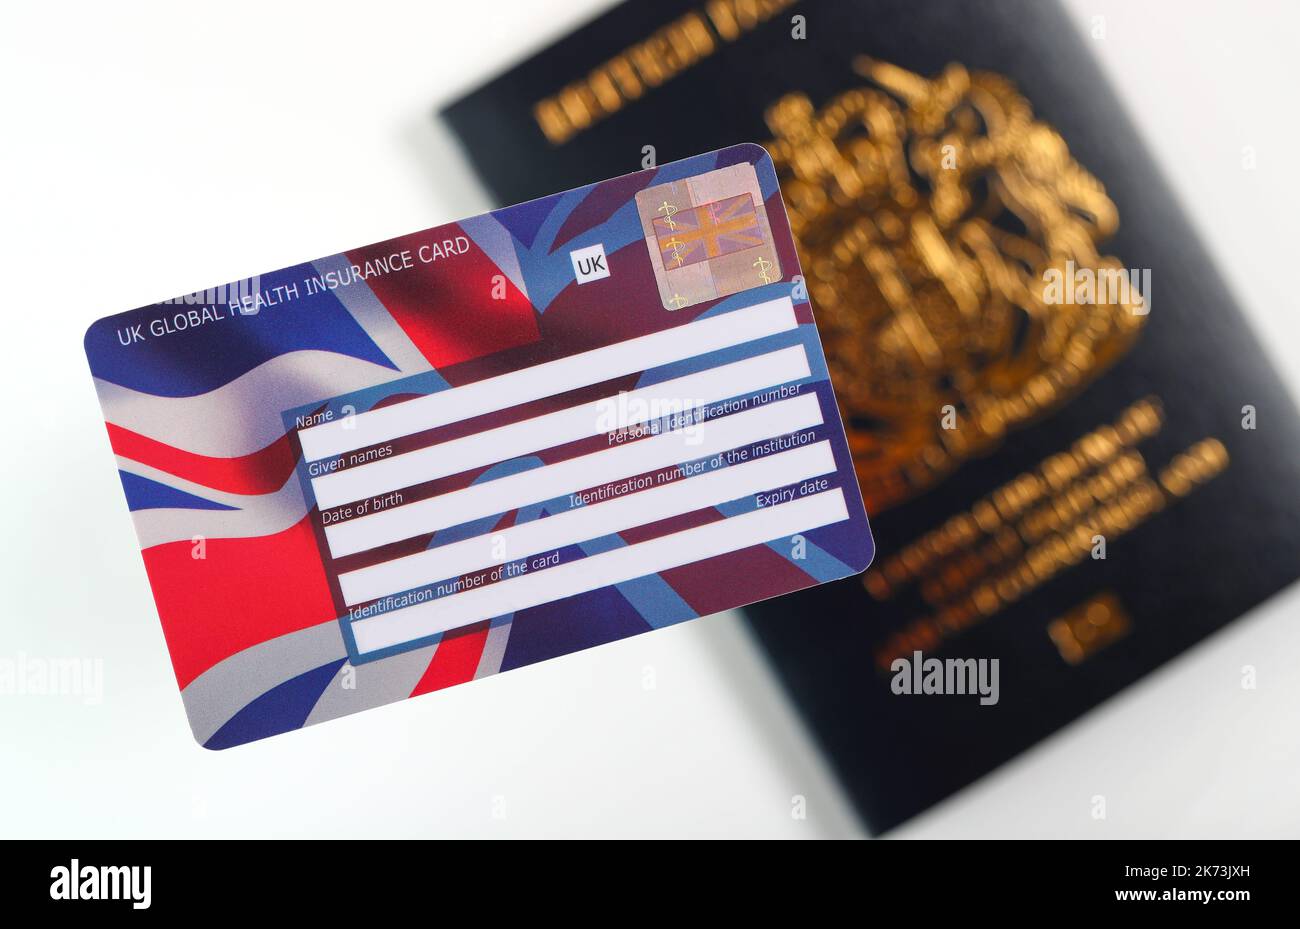 UK Global Health Insurance Card, nota anche come carta GHIC, con passaporto britannico. Foto Stock